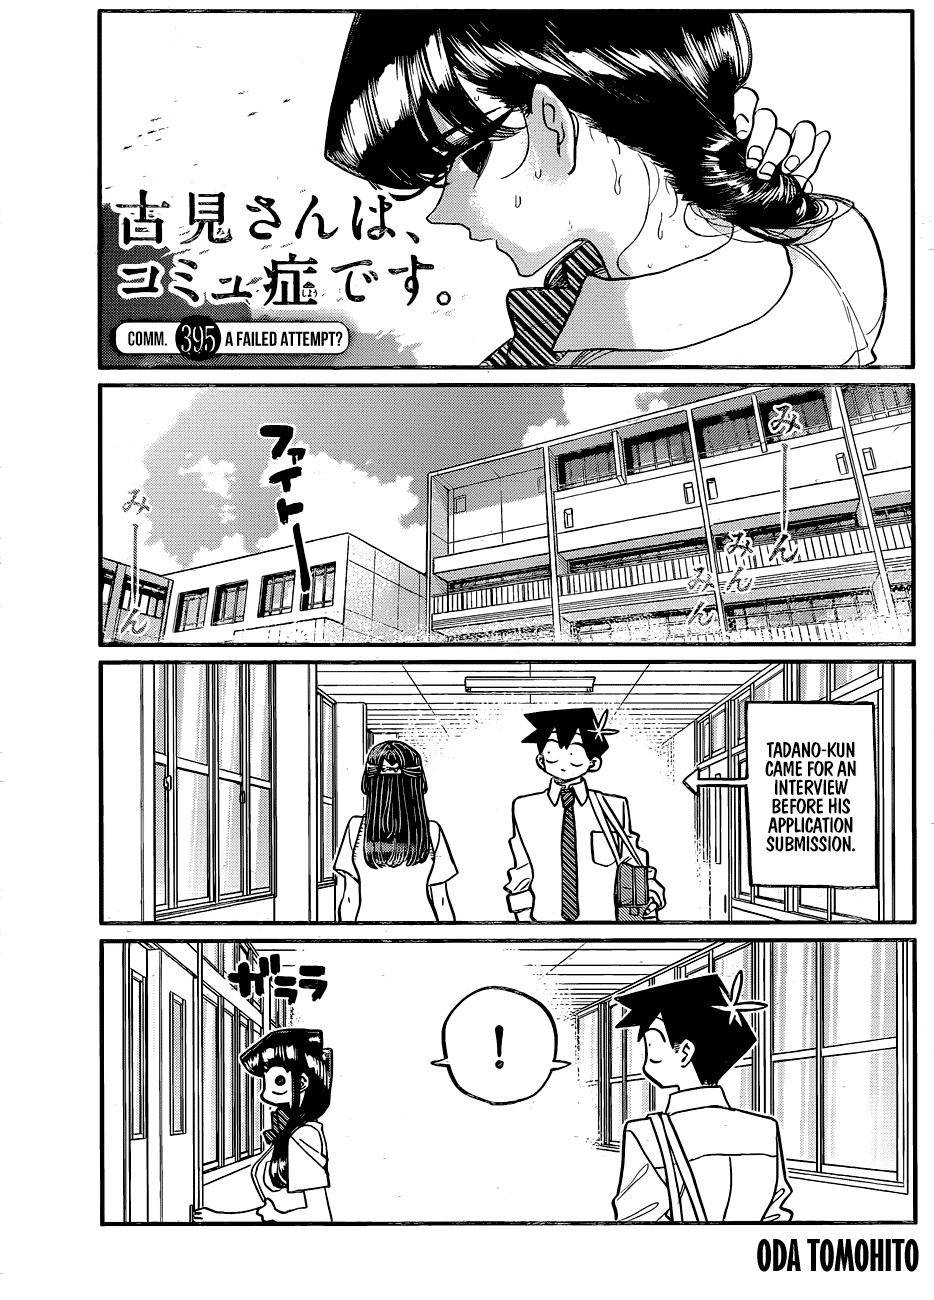 Komi-san wa Komyushou Desu chapter 395 page 1